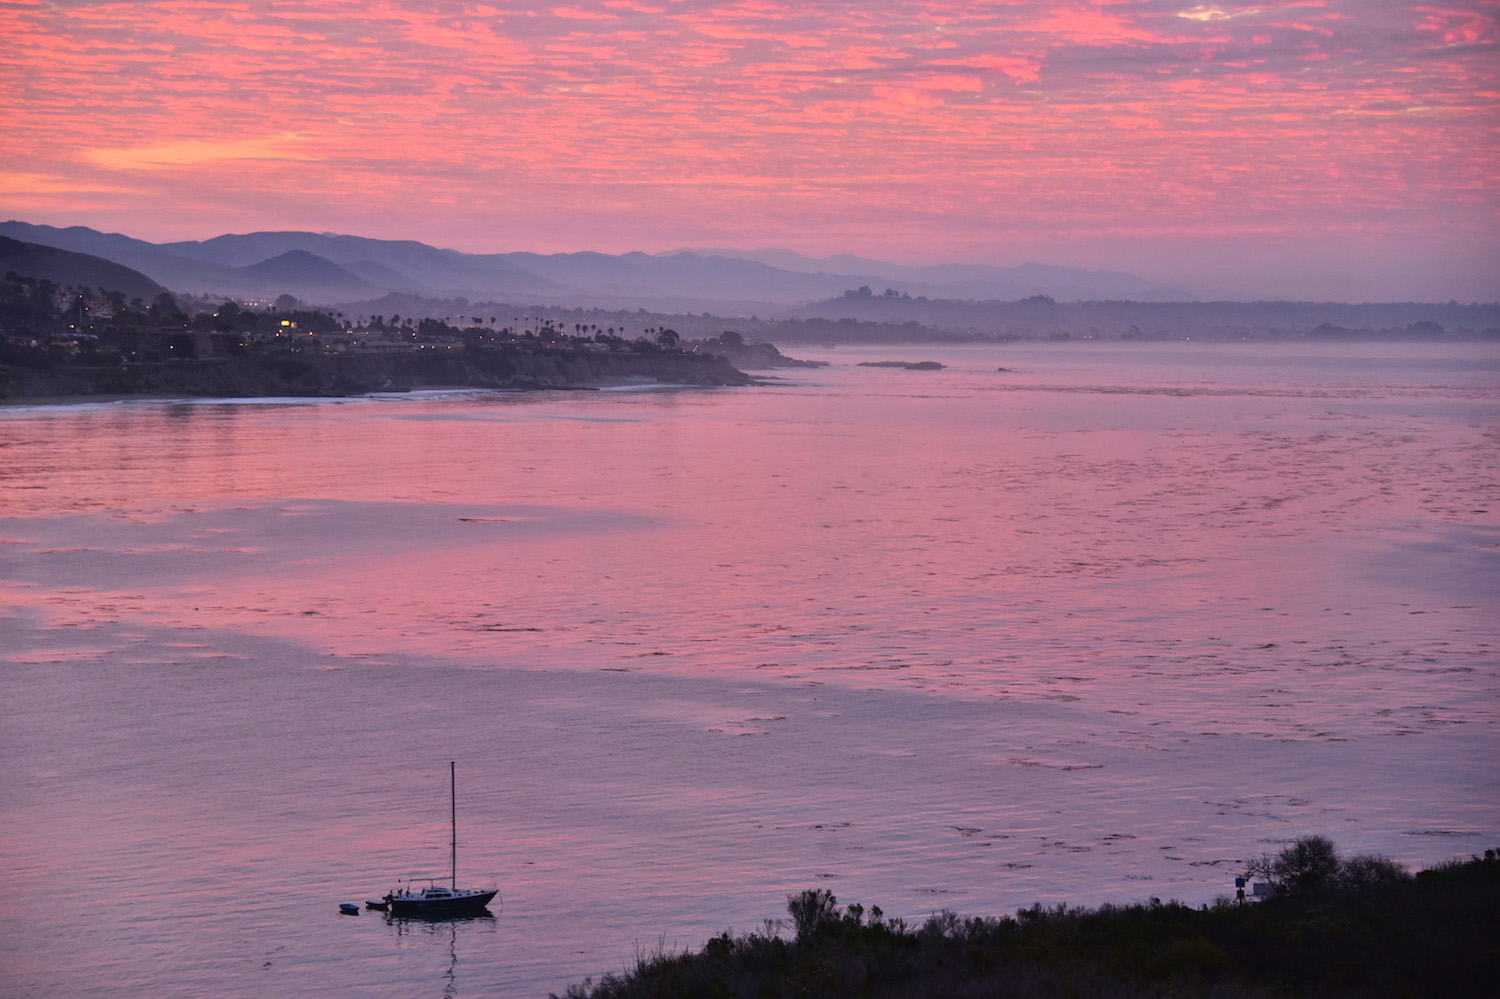 Sunrise in Pismo Beach, CA